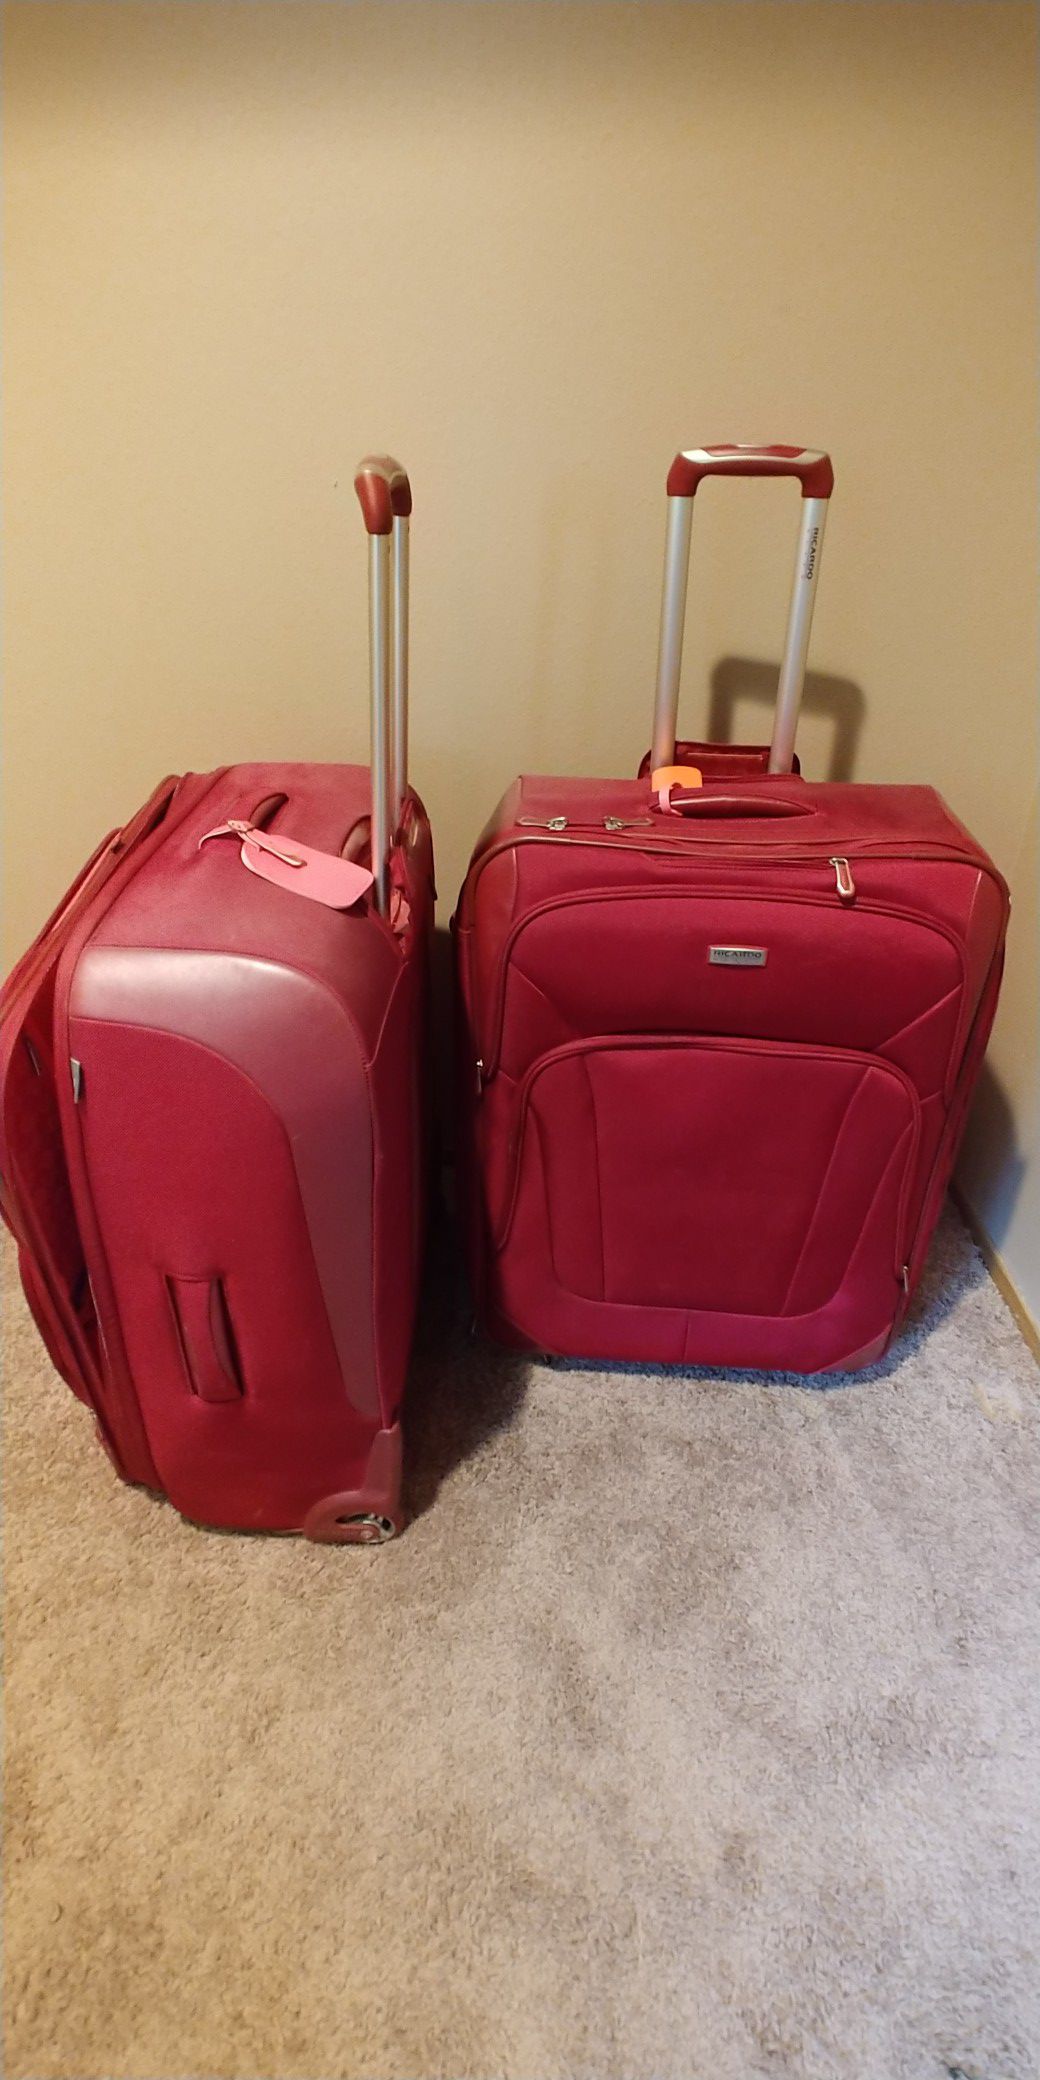 Luggage -Ricardo Elite - large size